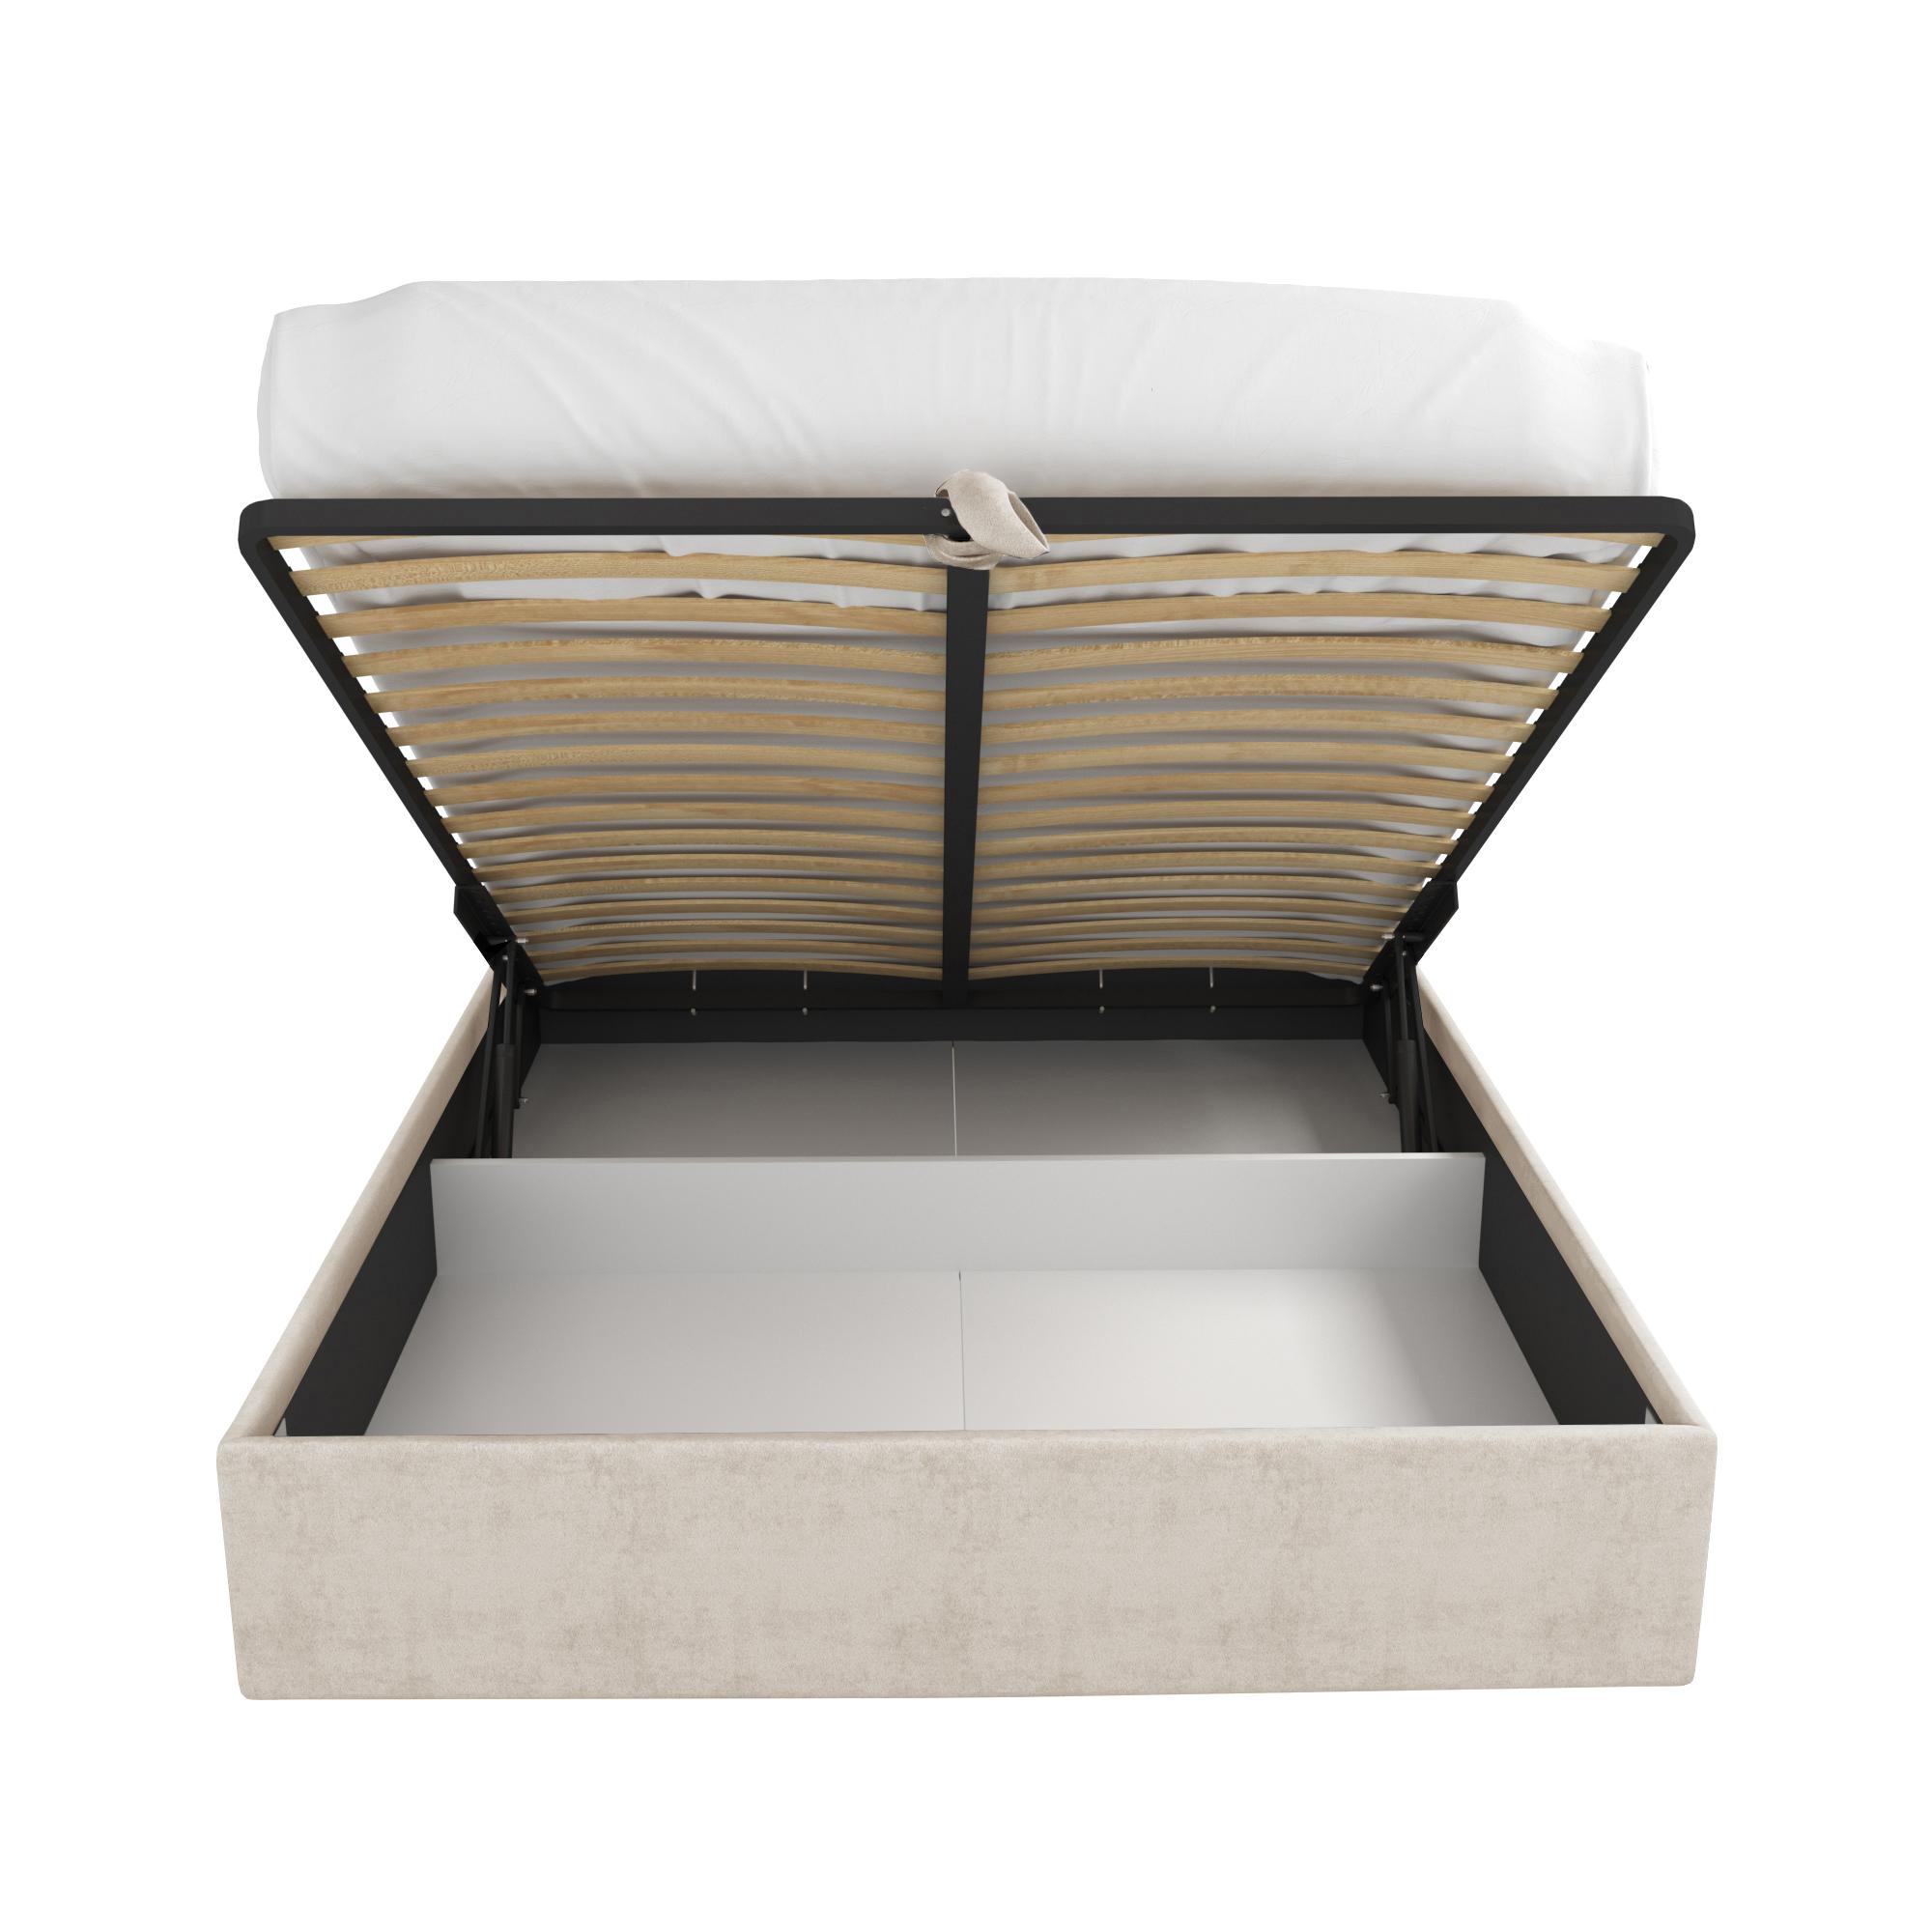 Кровать Салерно бежевая 160х200 изображение товара